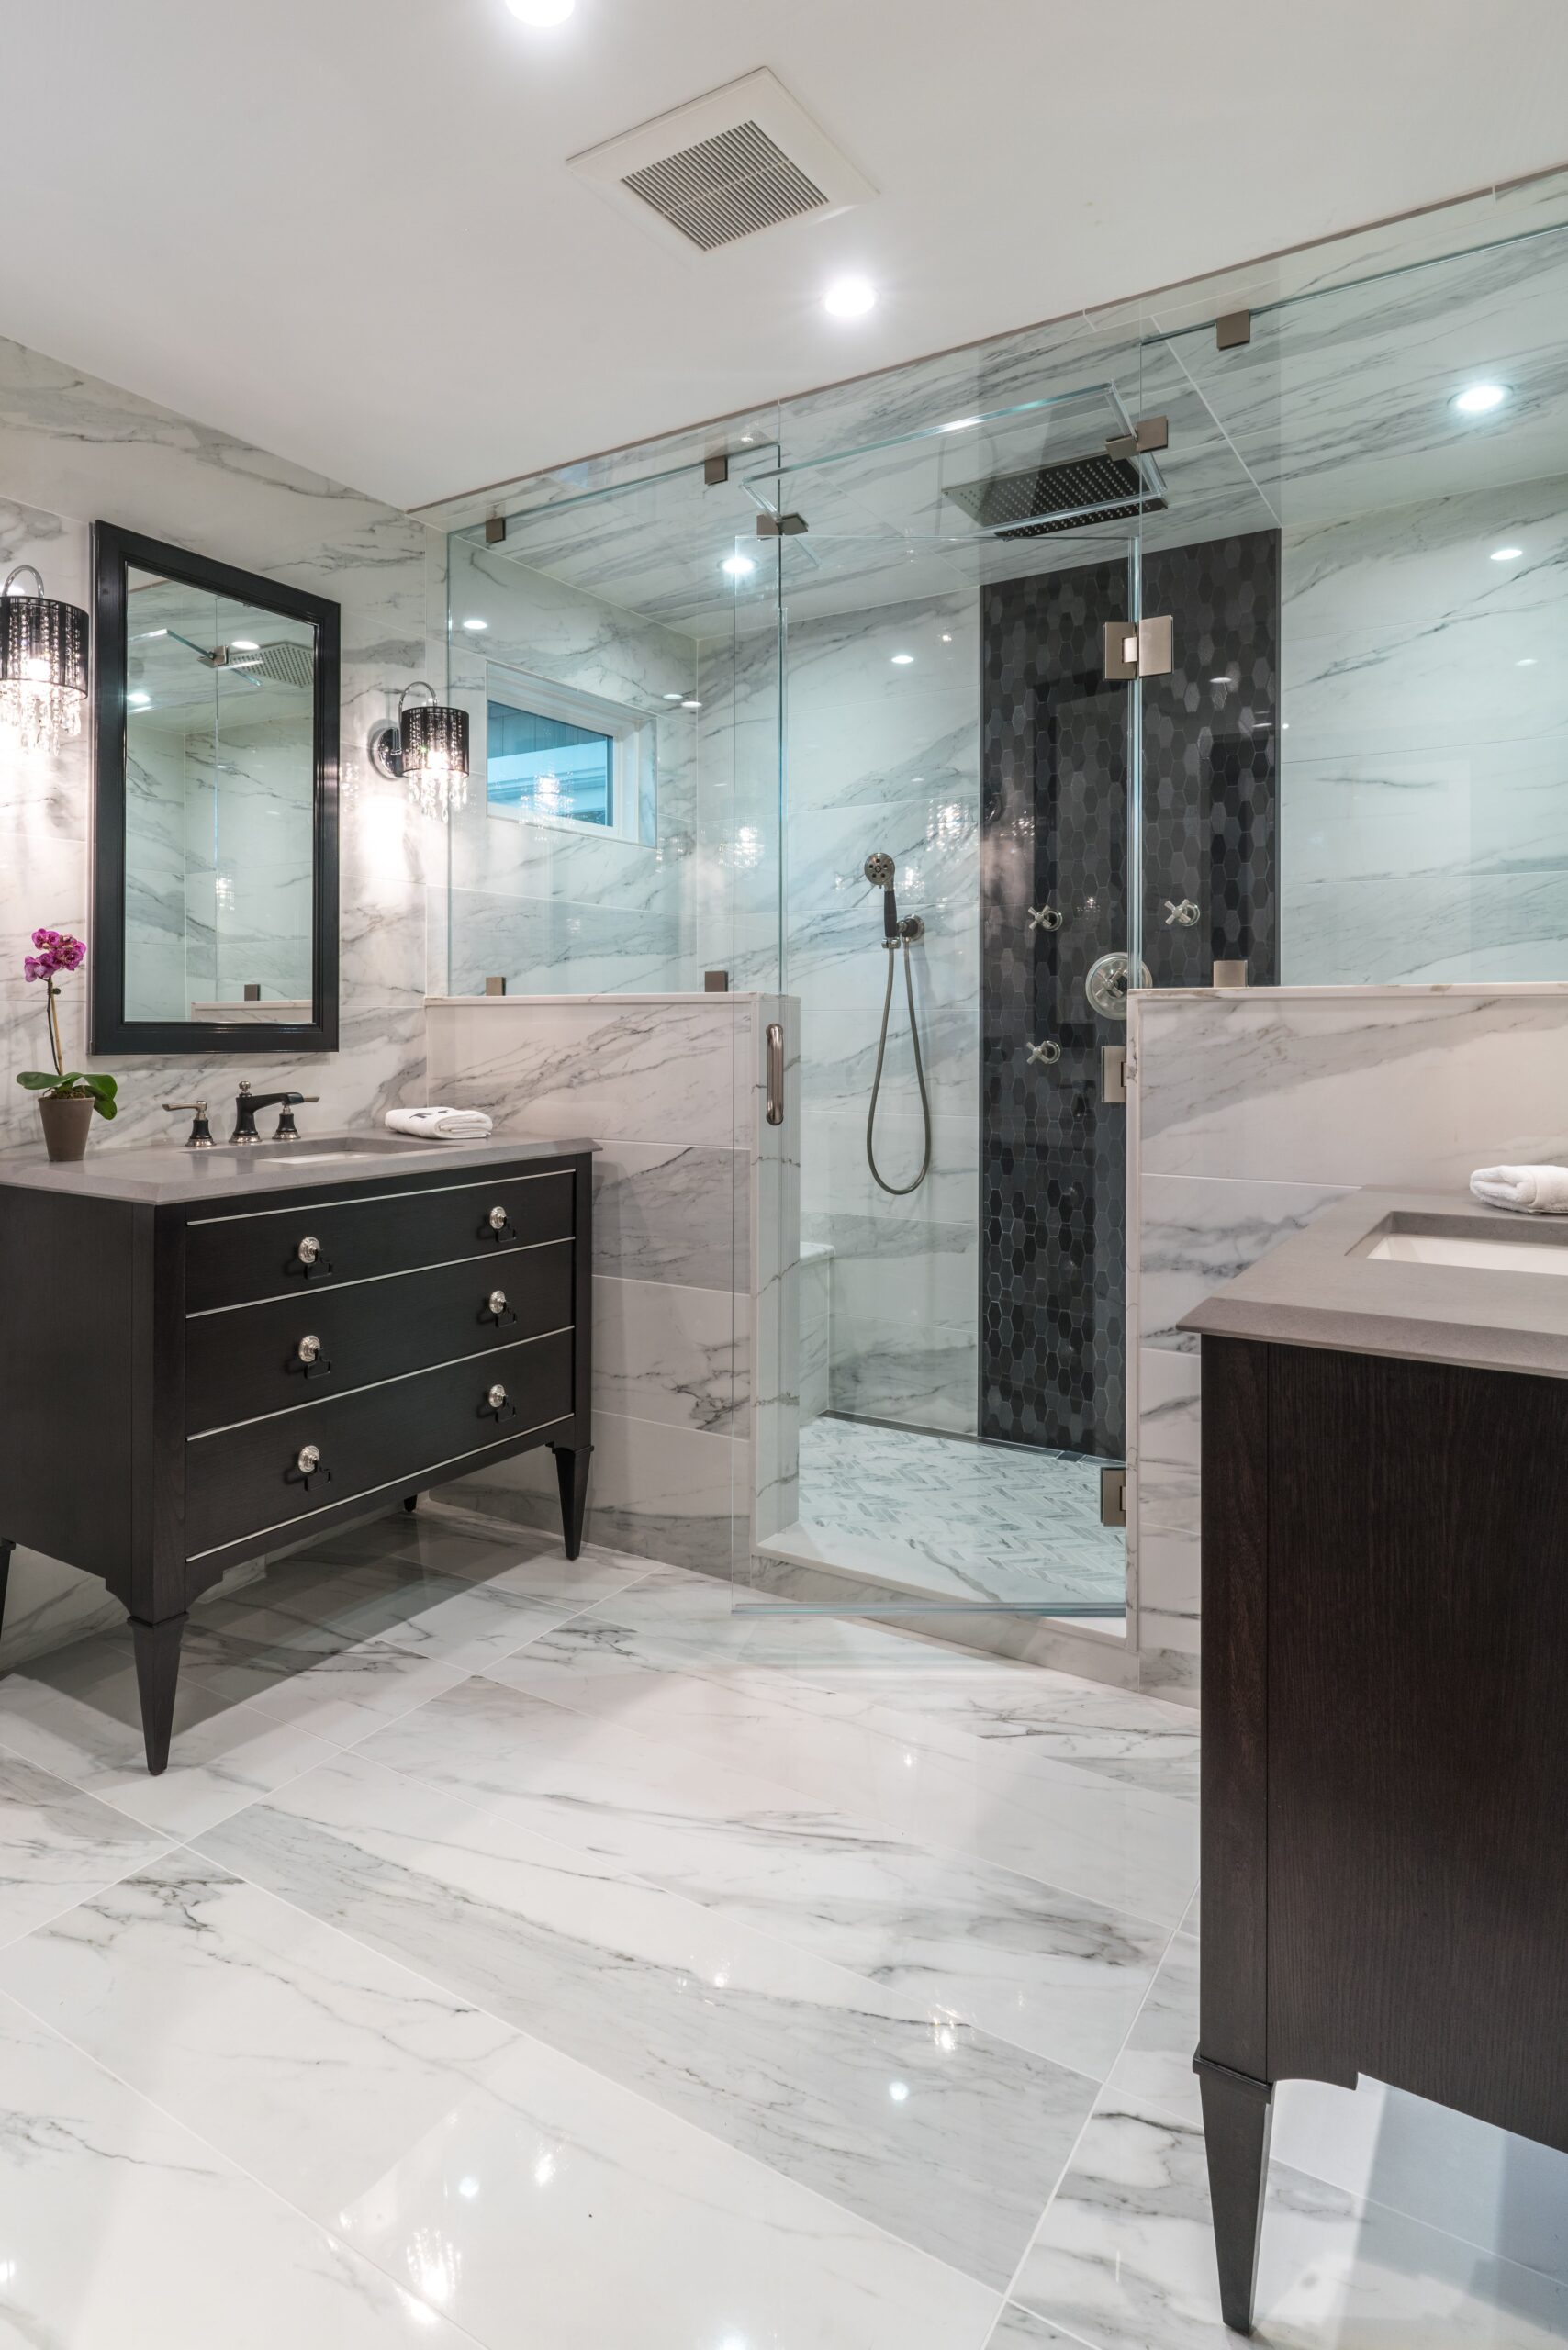 Create an Appealing Bathroom Tile Design - Conestoga Tile